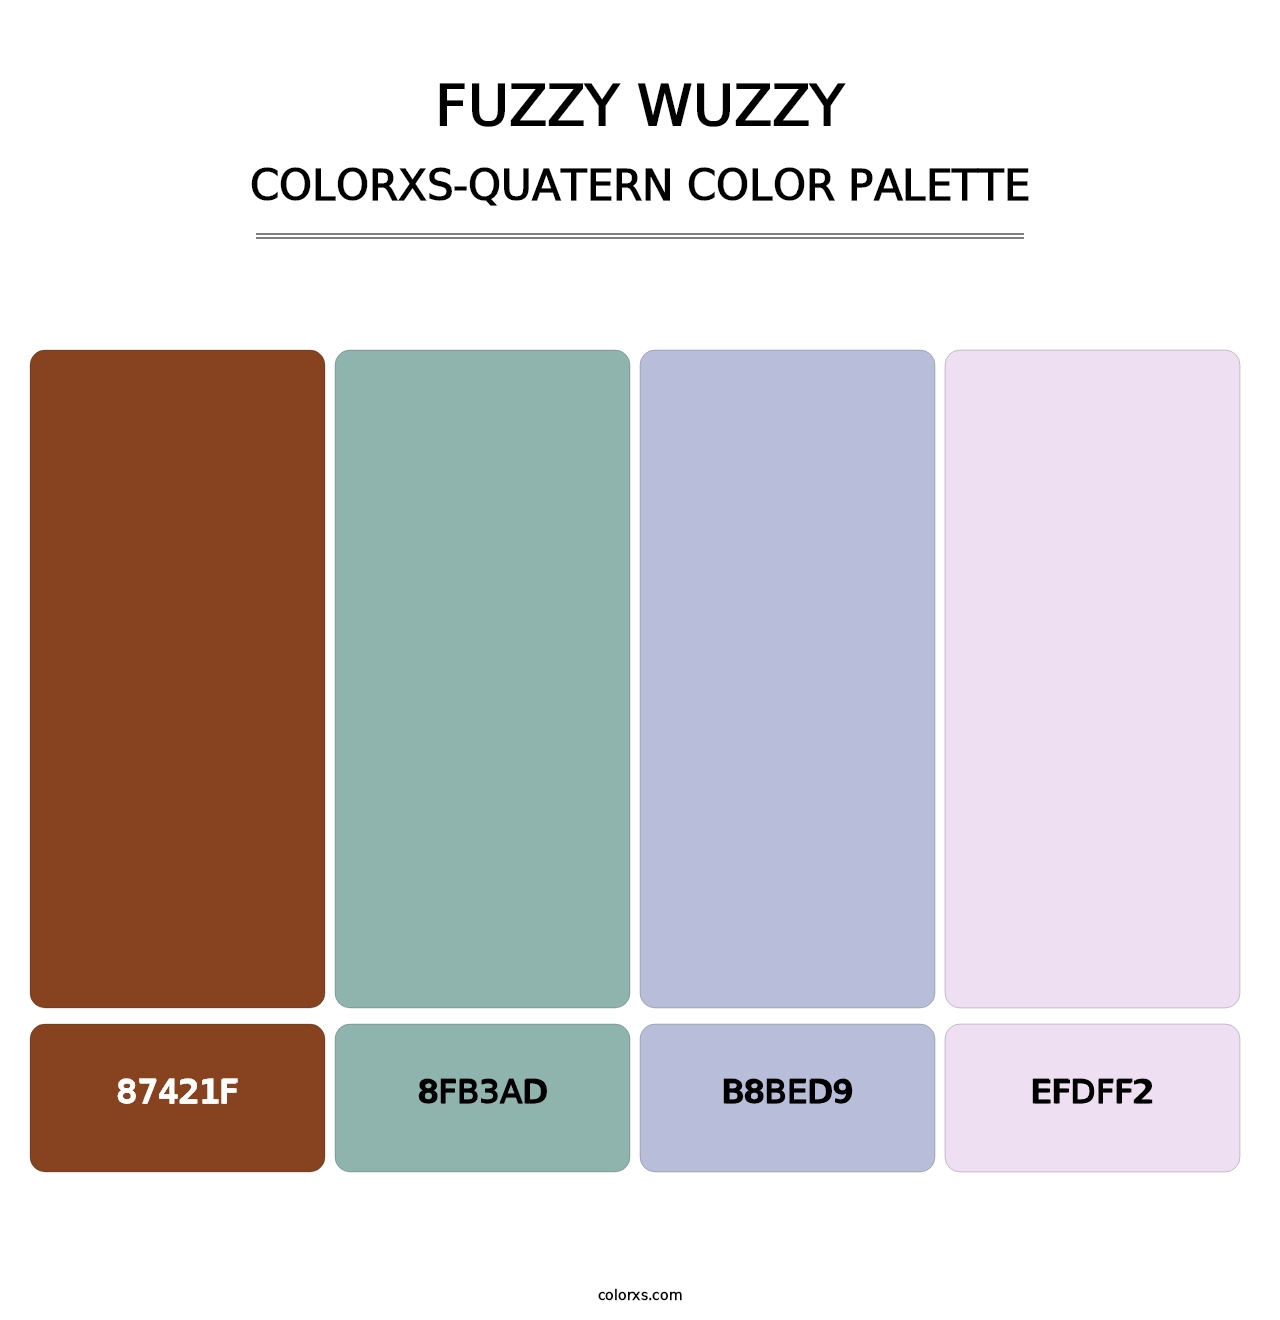 Fuzzy Wuzzy - Colorxs Quatern Palette